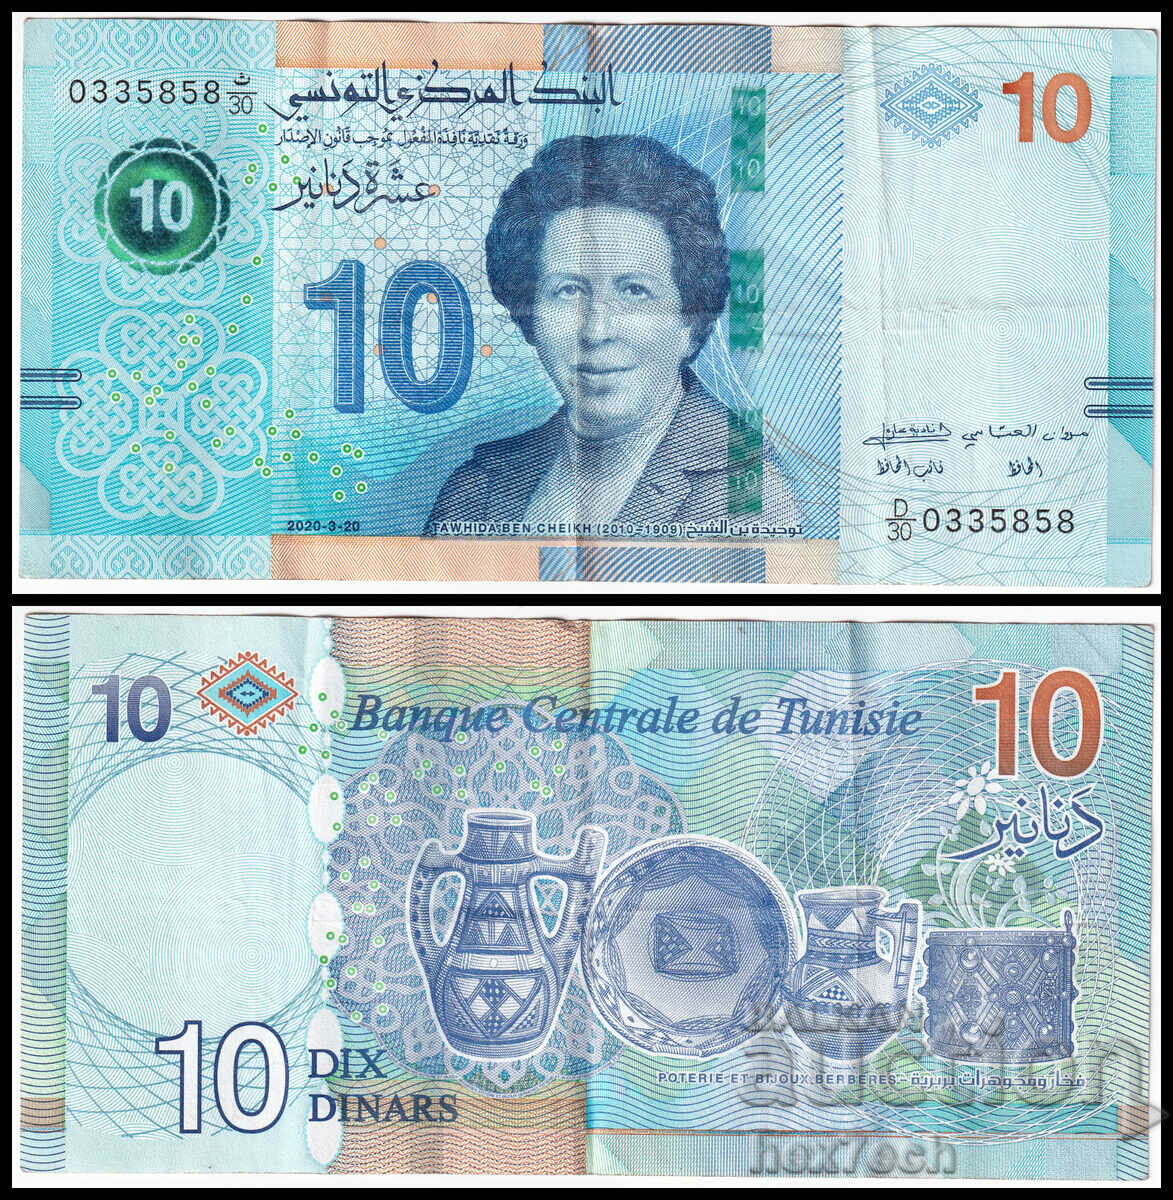 ❤️ ⭐ Tunisia 2020 10 dinars ⭐ ❤️